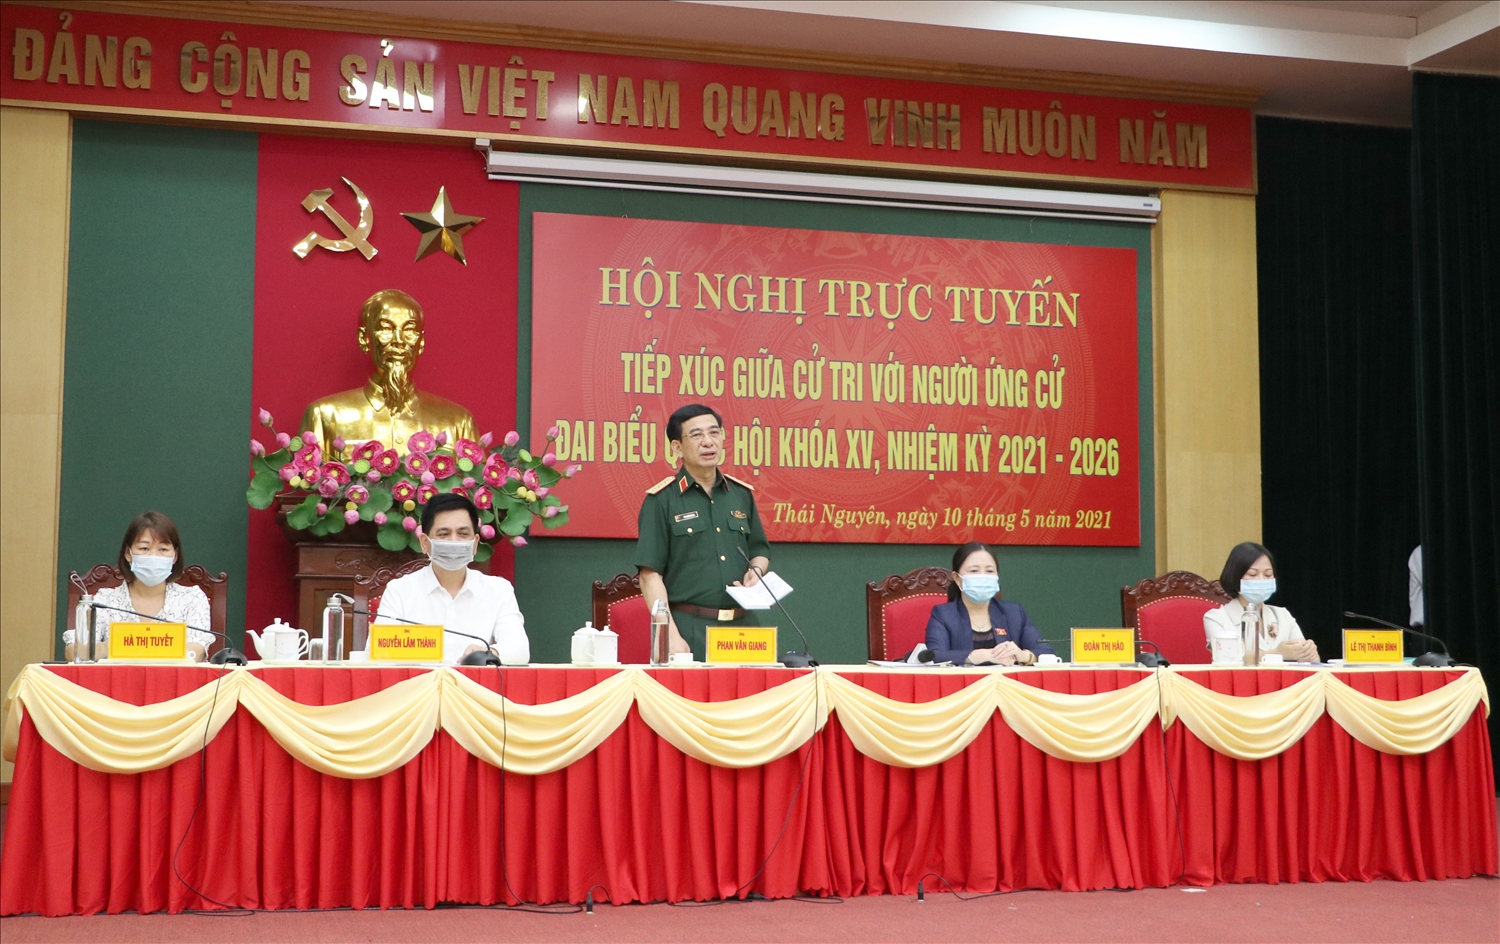 Ông Nguyễn Lâm Thành (thứ hai từ trái qua) tại Hội nghị trực tuyến tiếp xúc giữa cử tri với người ứng cử ĐBQH khóa XV, nhiệm kỳ 2021 - 2026 tại Đơn vị bầu cử số 2, tỉnh Thái Nguyên, ngày 10/5/2021